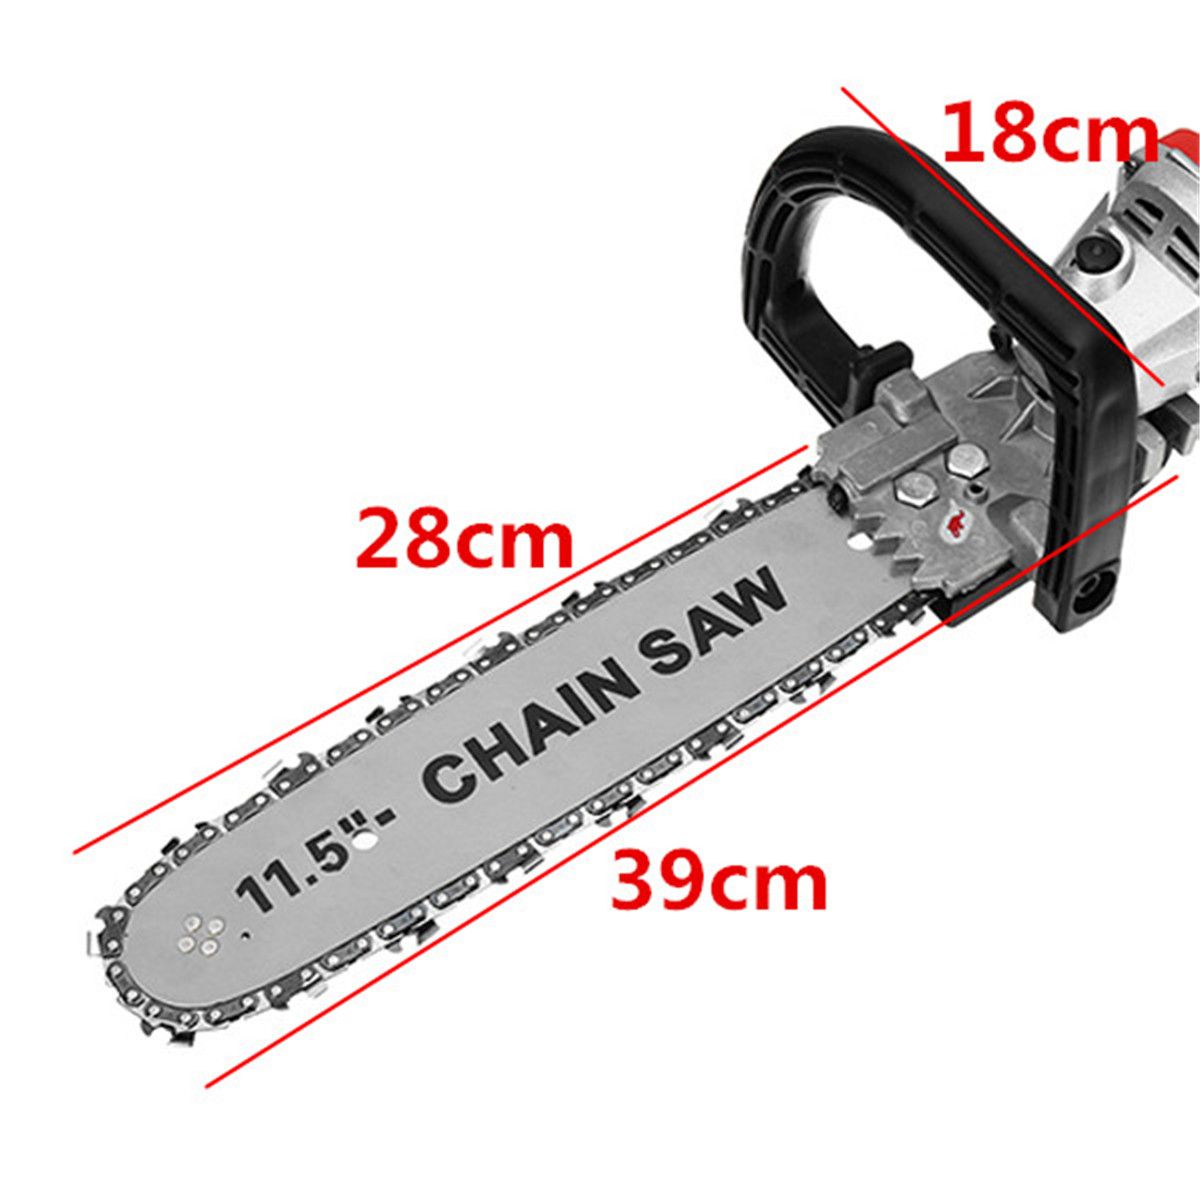 11000rmin-220V-1000W-Electric-Angle-Grinder-Chainsaw-Bracket-DIY-Cutting-Tools-1261962